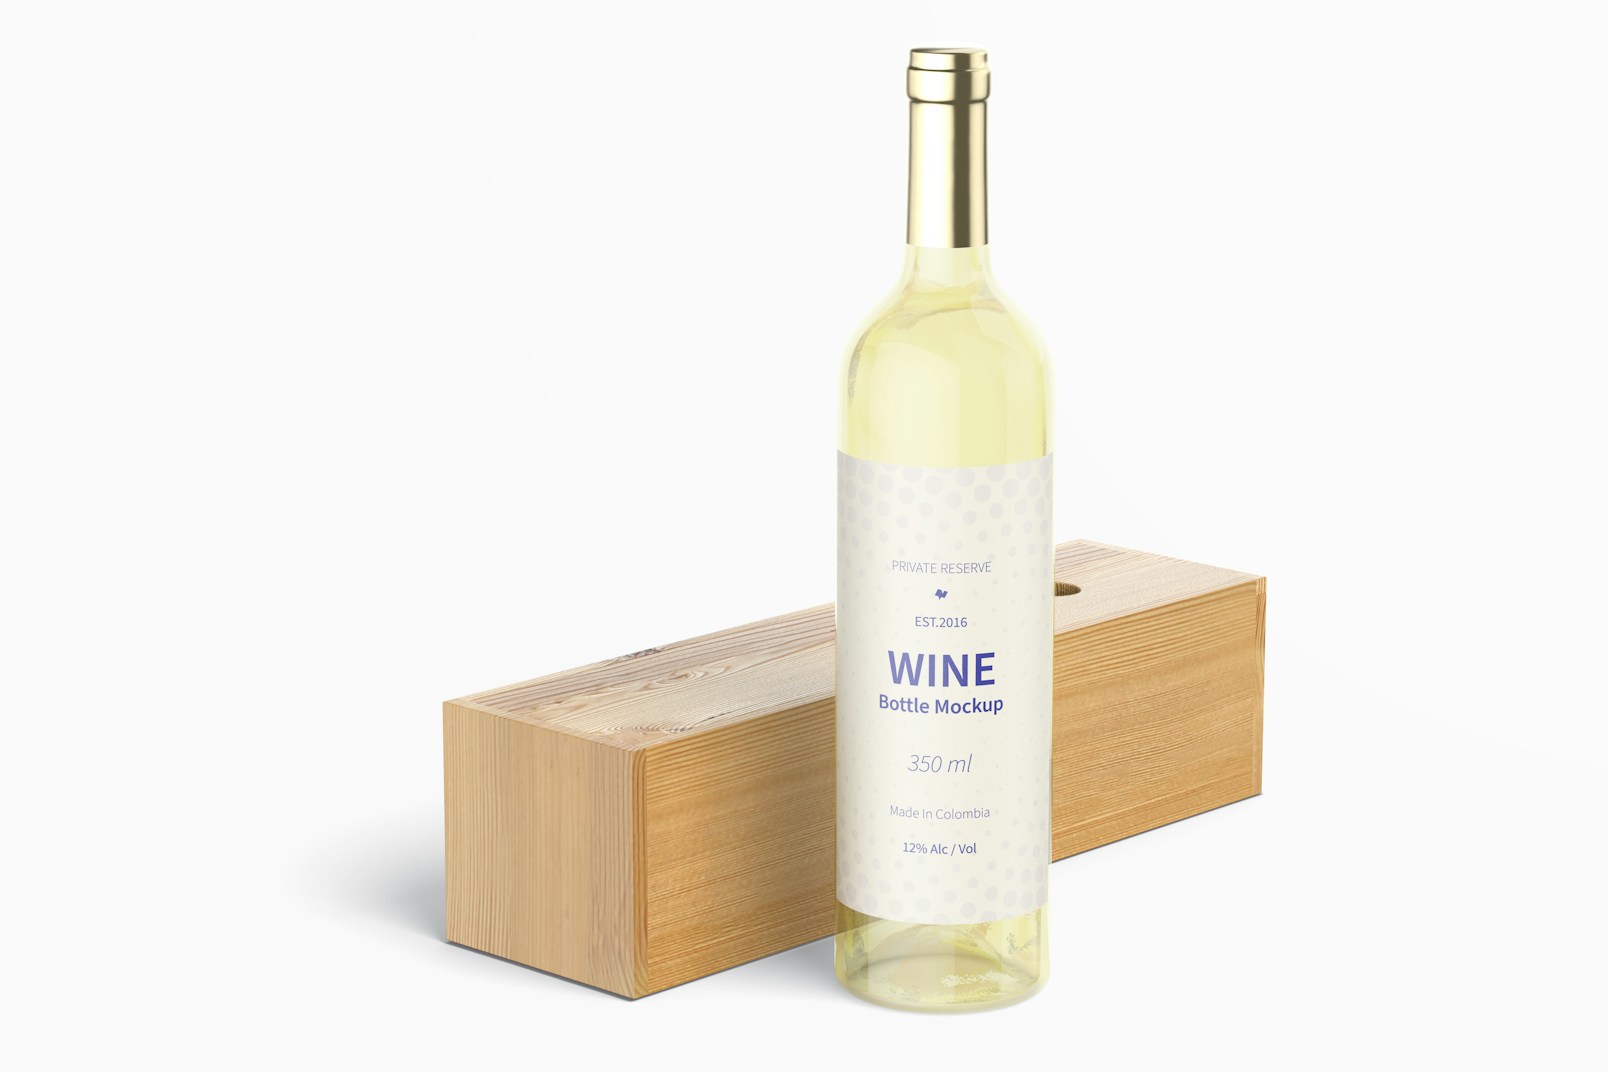 350ml Wine Bottle Mockup with Lying Wood Box